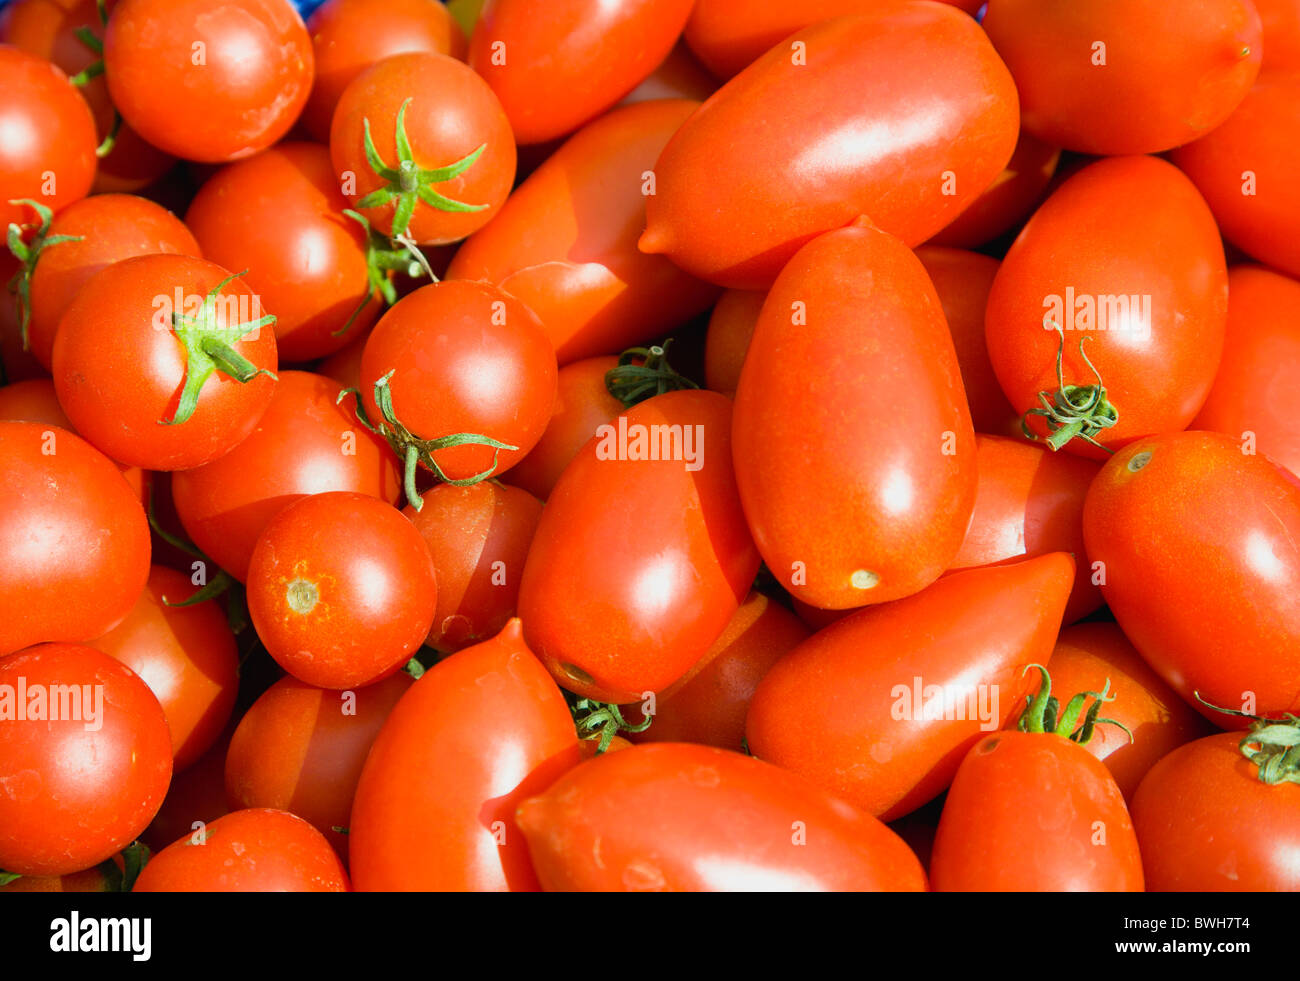 Agricoltura, frutta, pomodoro, con varietà miste di ripe organic pomodori rossi. Foto Stock